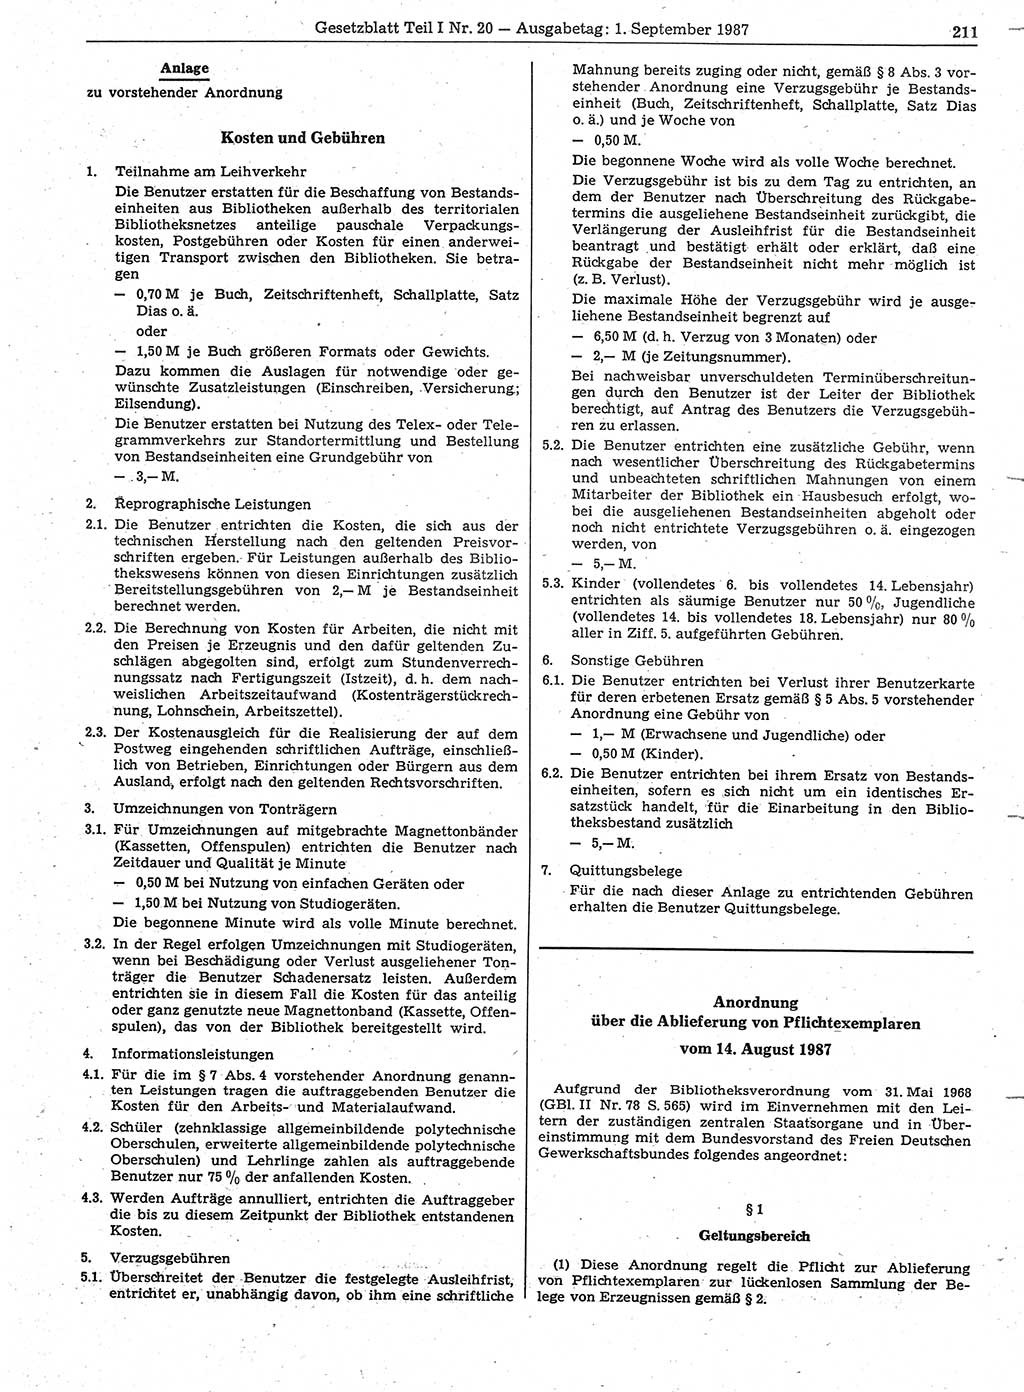 Gesetzblatt (GBl.) der Deutschen Demokratischen Republik (DDR) Teil Ⅰ 1987, Seite 211 (GBl. DDR Ⅰ 1987, S. 211)